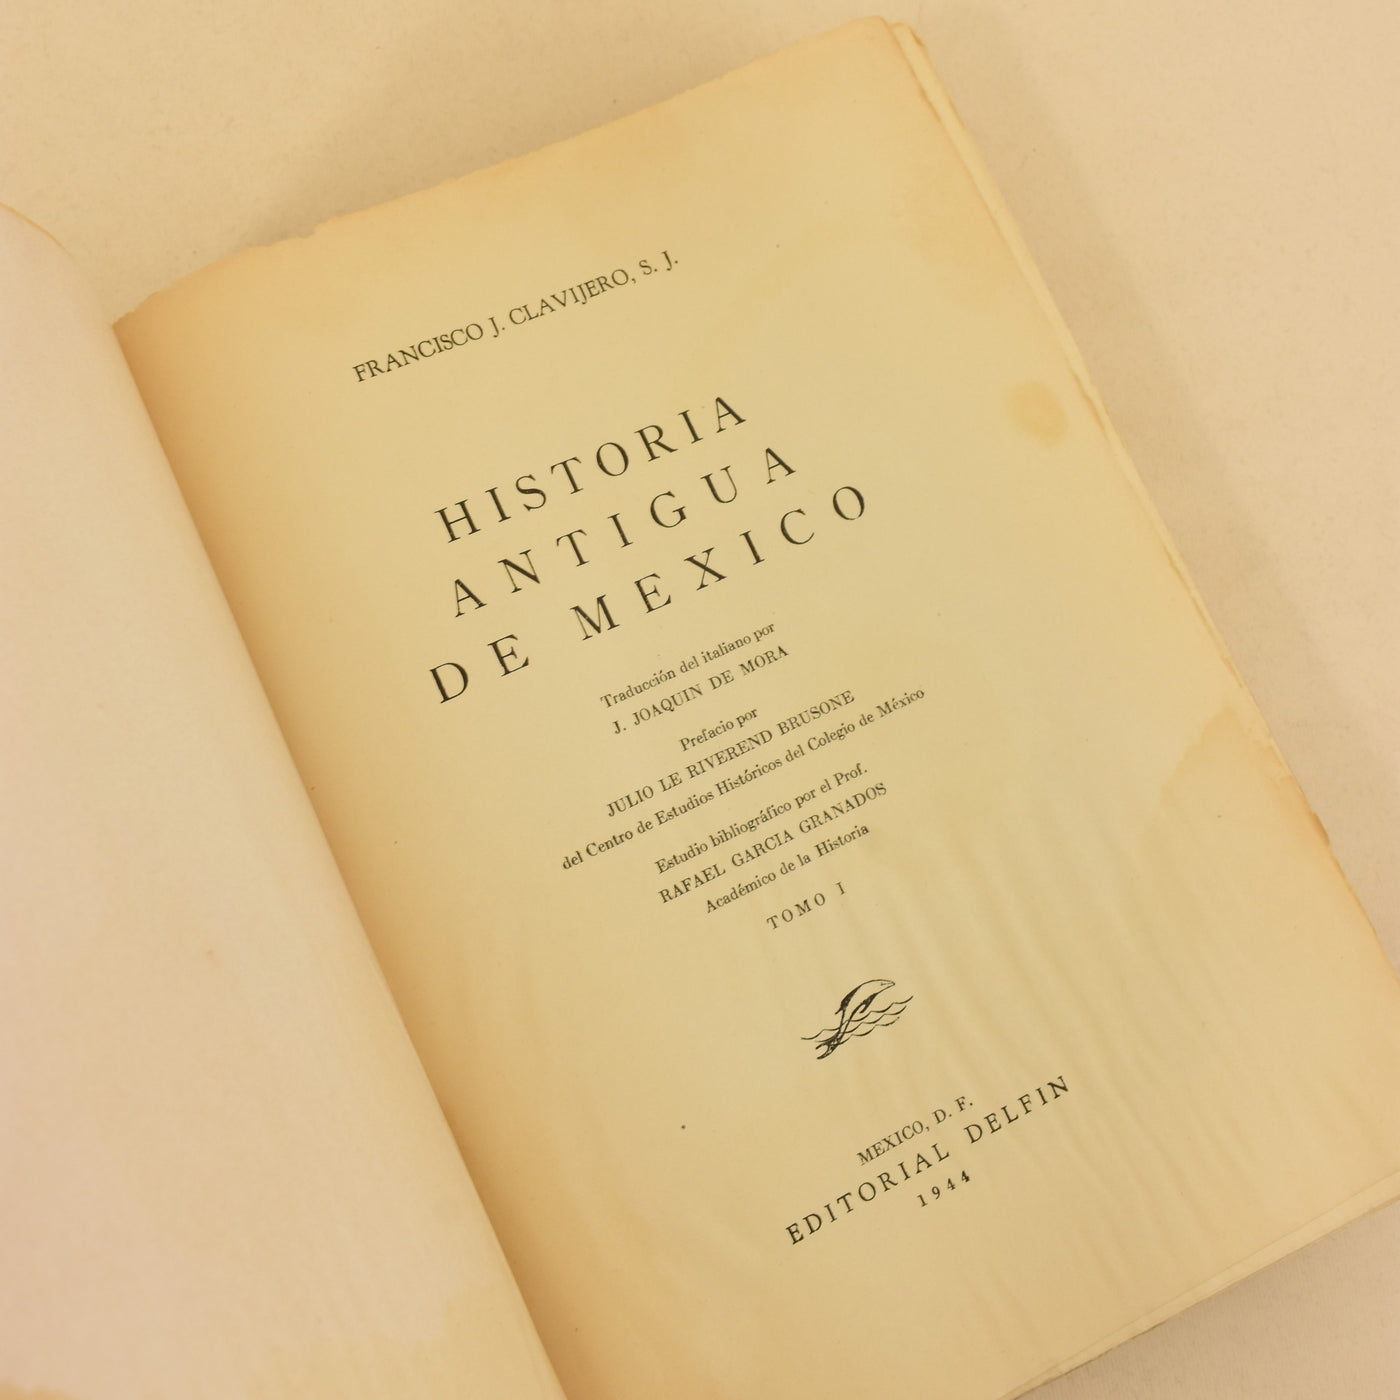 HISTORIA ANTIGUA DE MÉXICO - Francisco J. Clavijero, S. J.